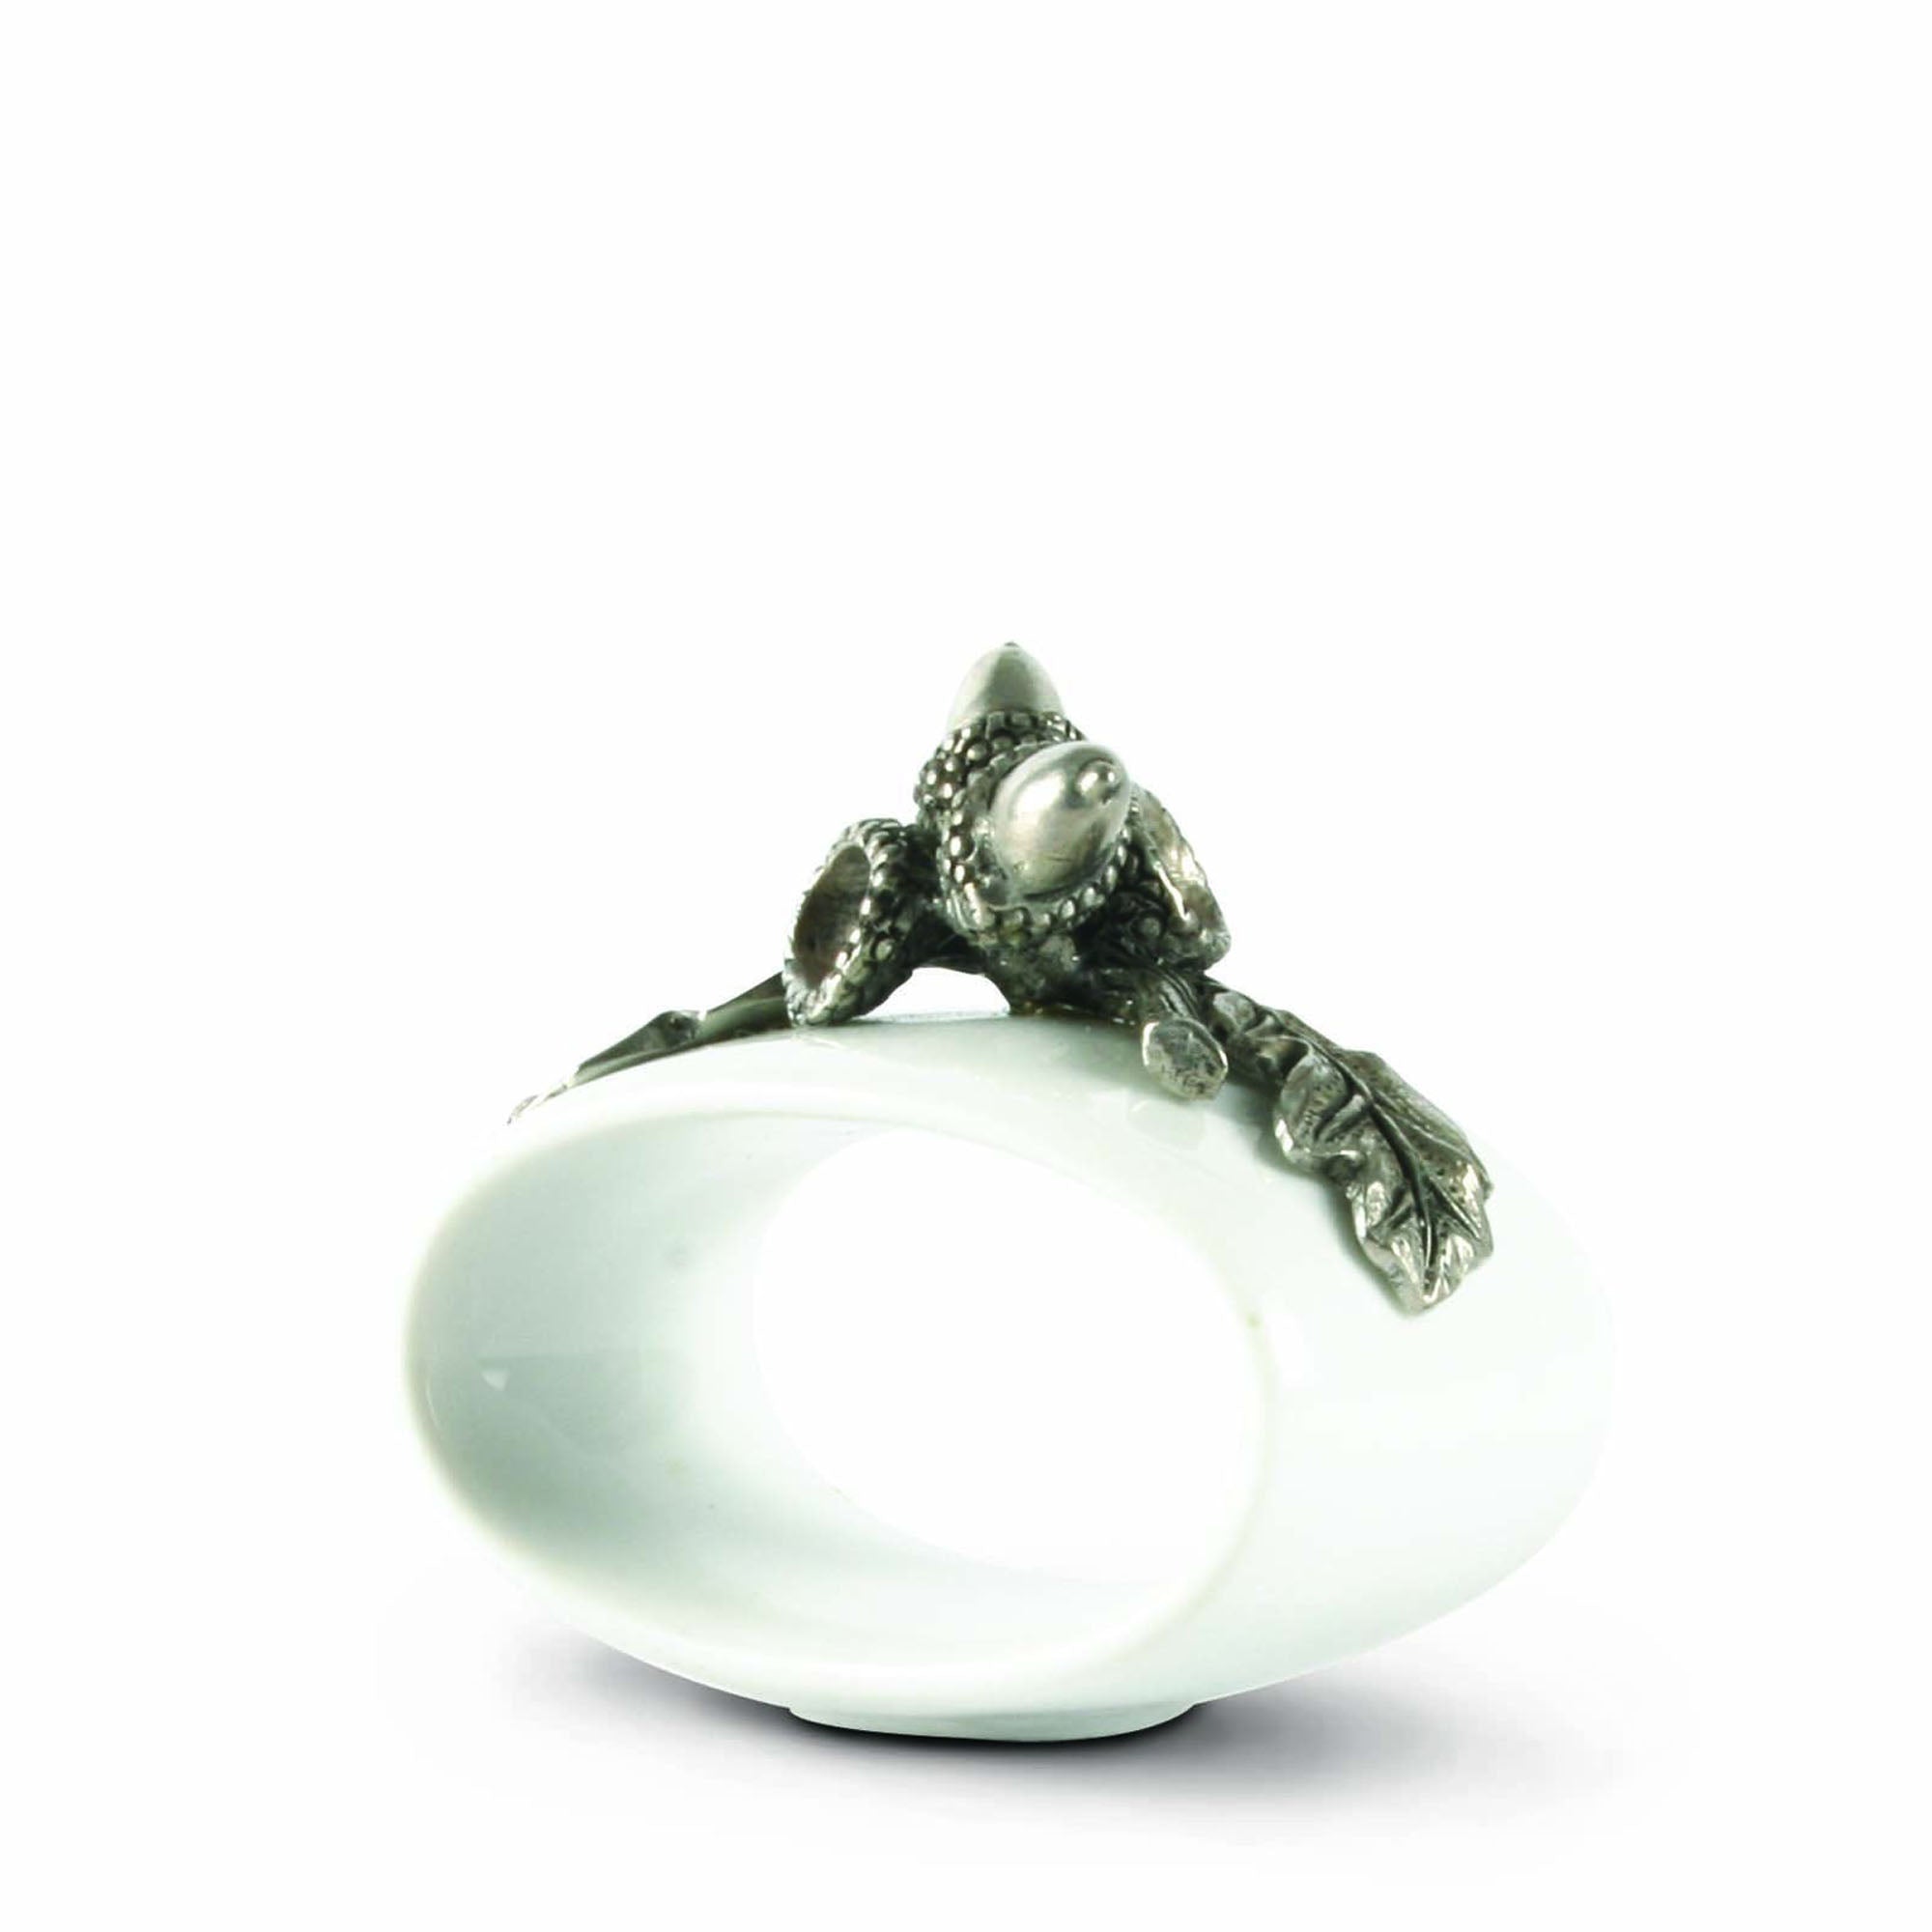 Vagabond House Acorn Stoneware Napkin Ring Product Image